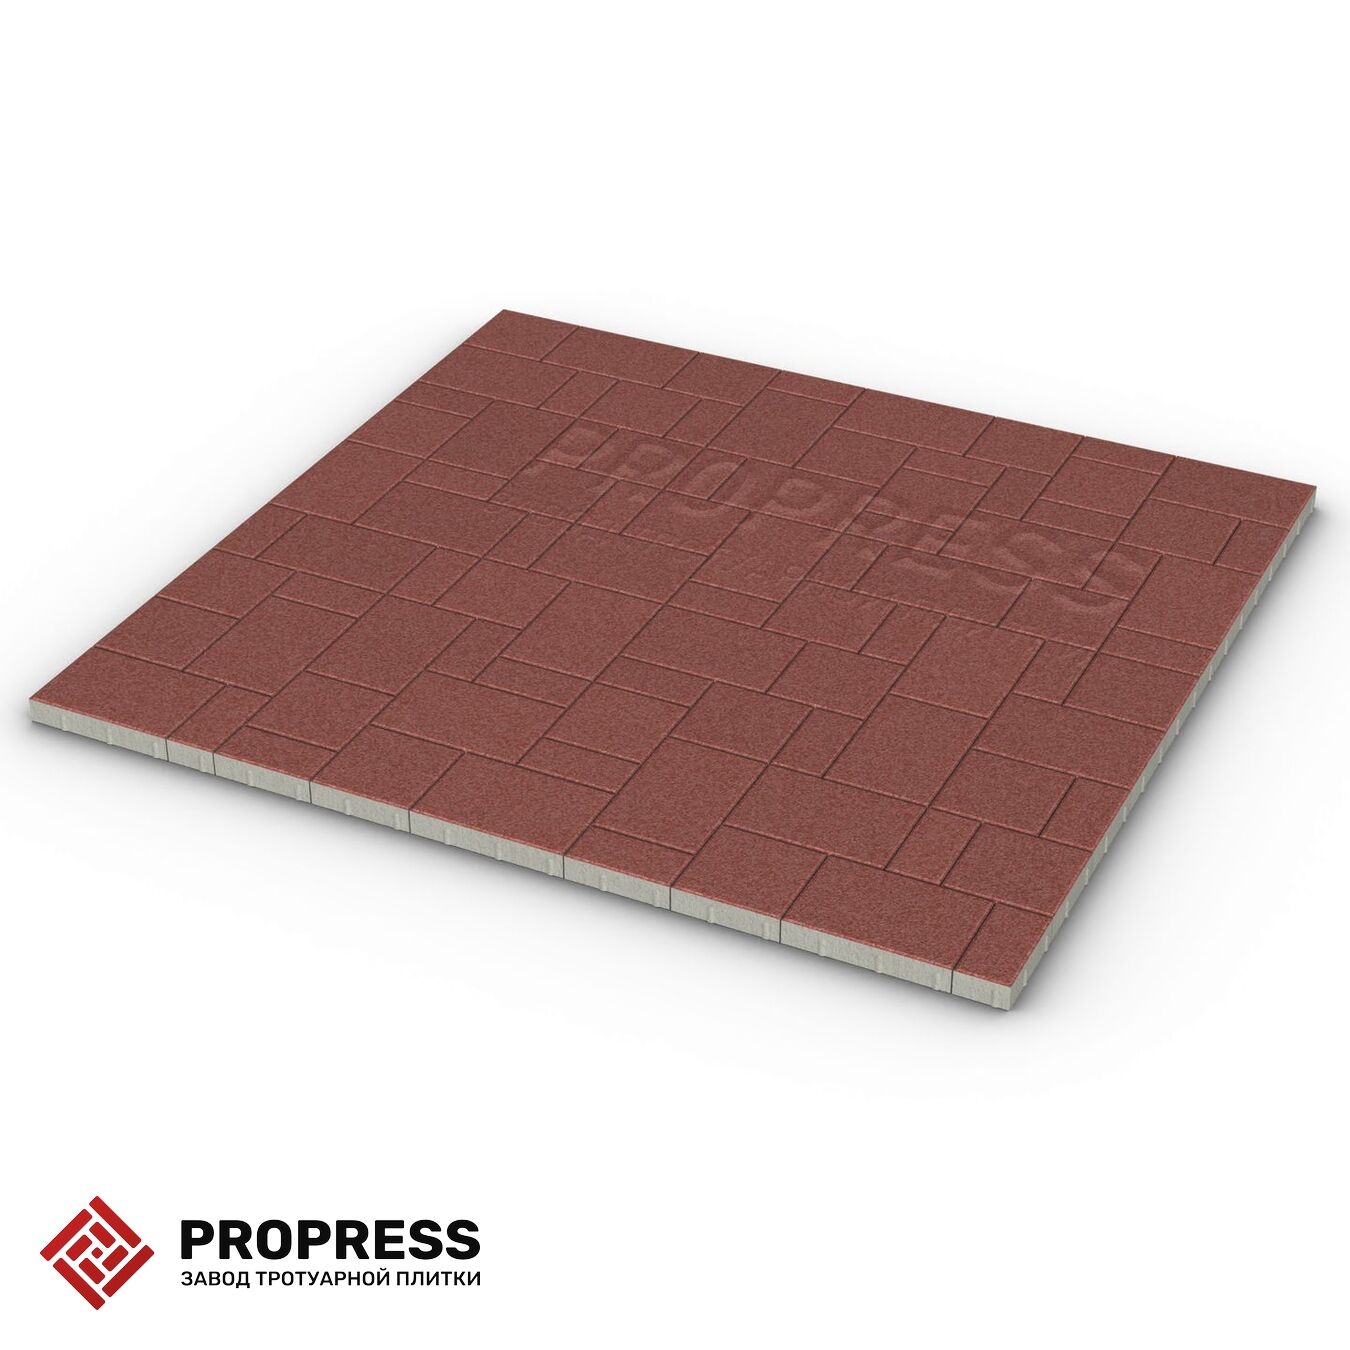 Тротуарная плитка Пропресс Лэндхаус Красный мрамор 40 мм